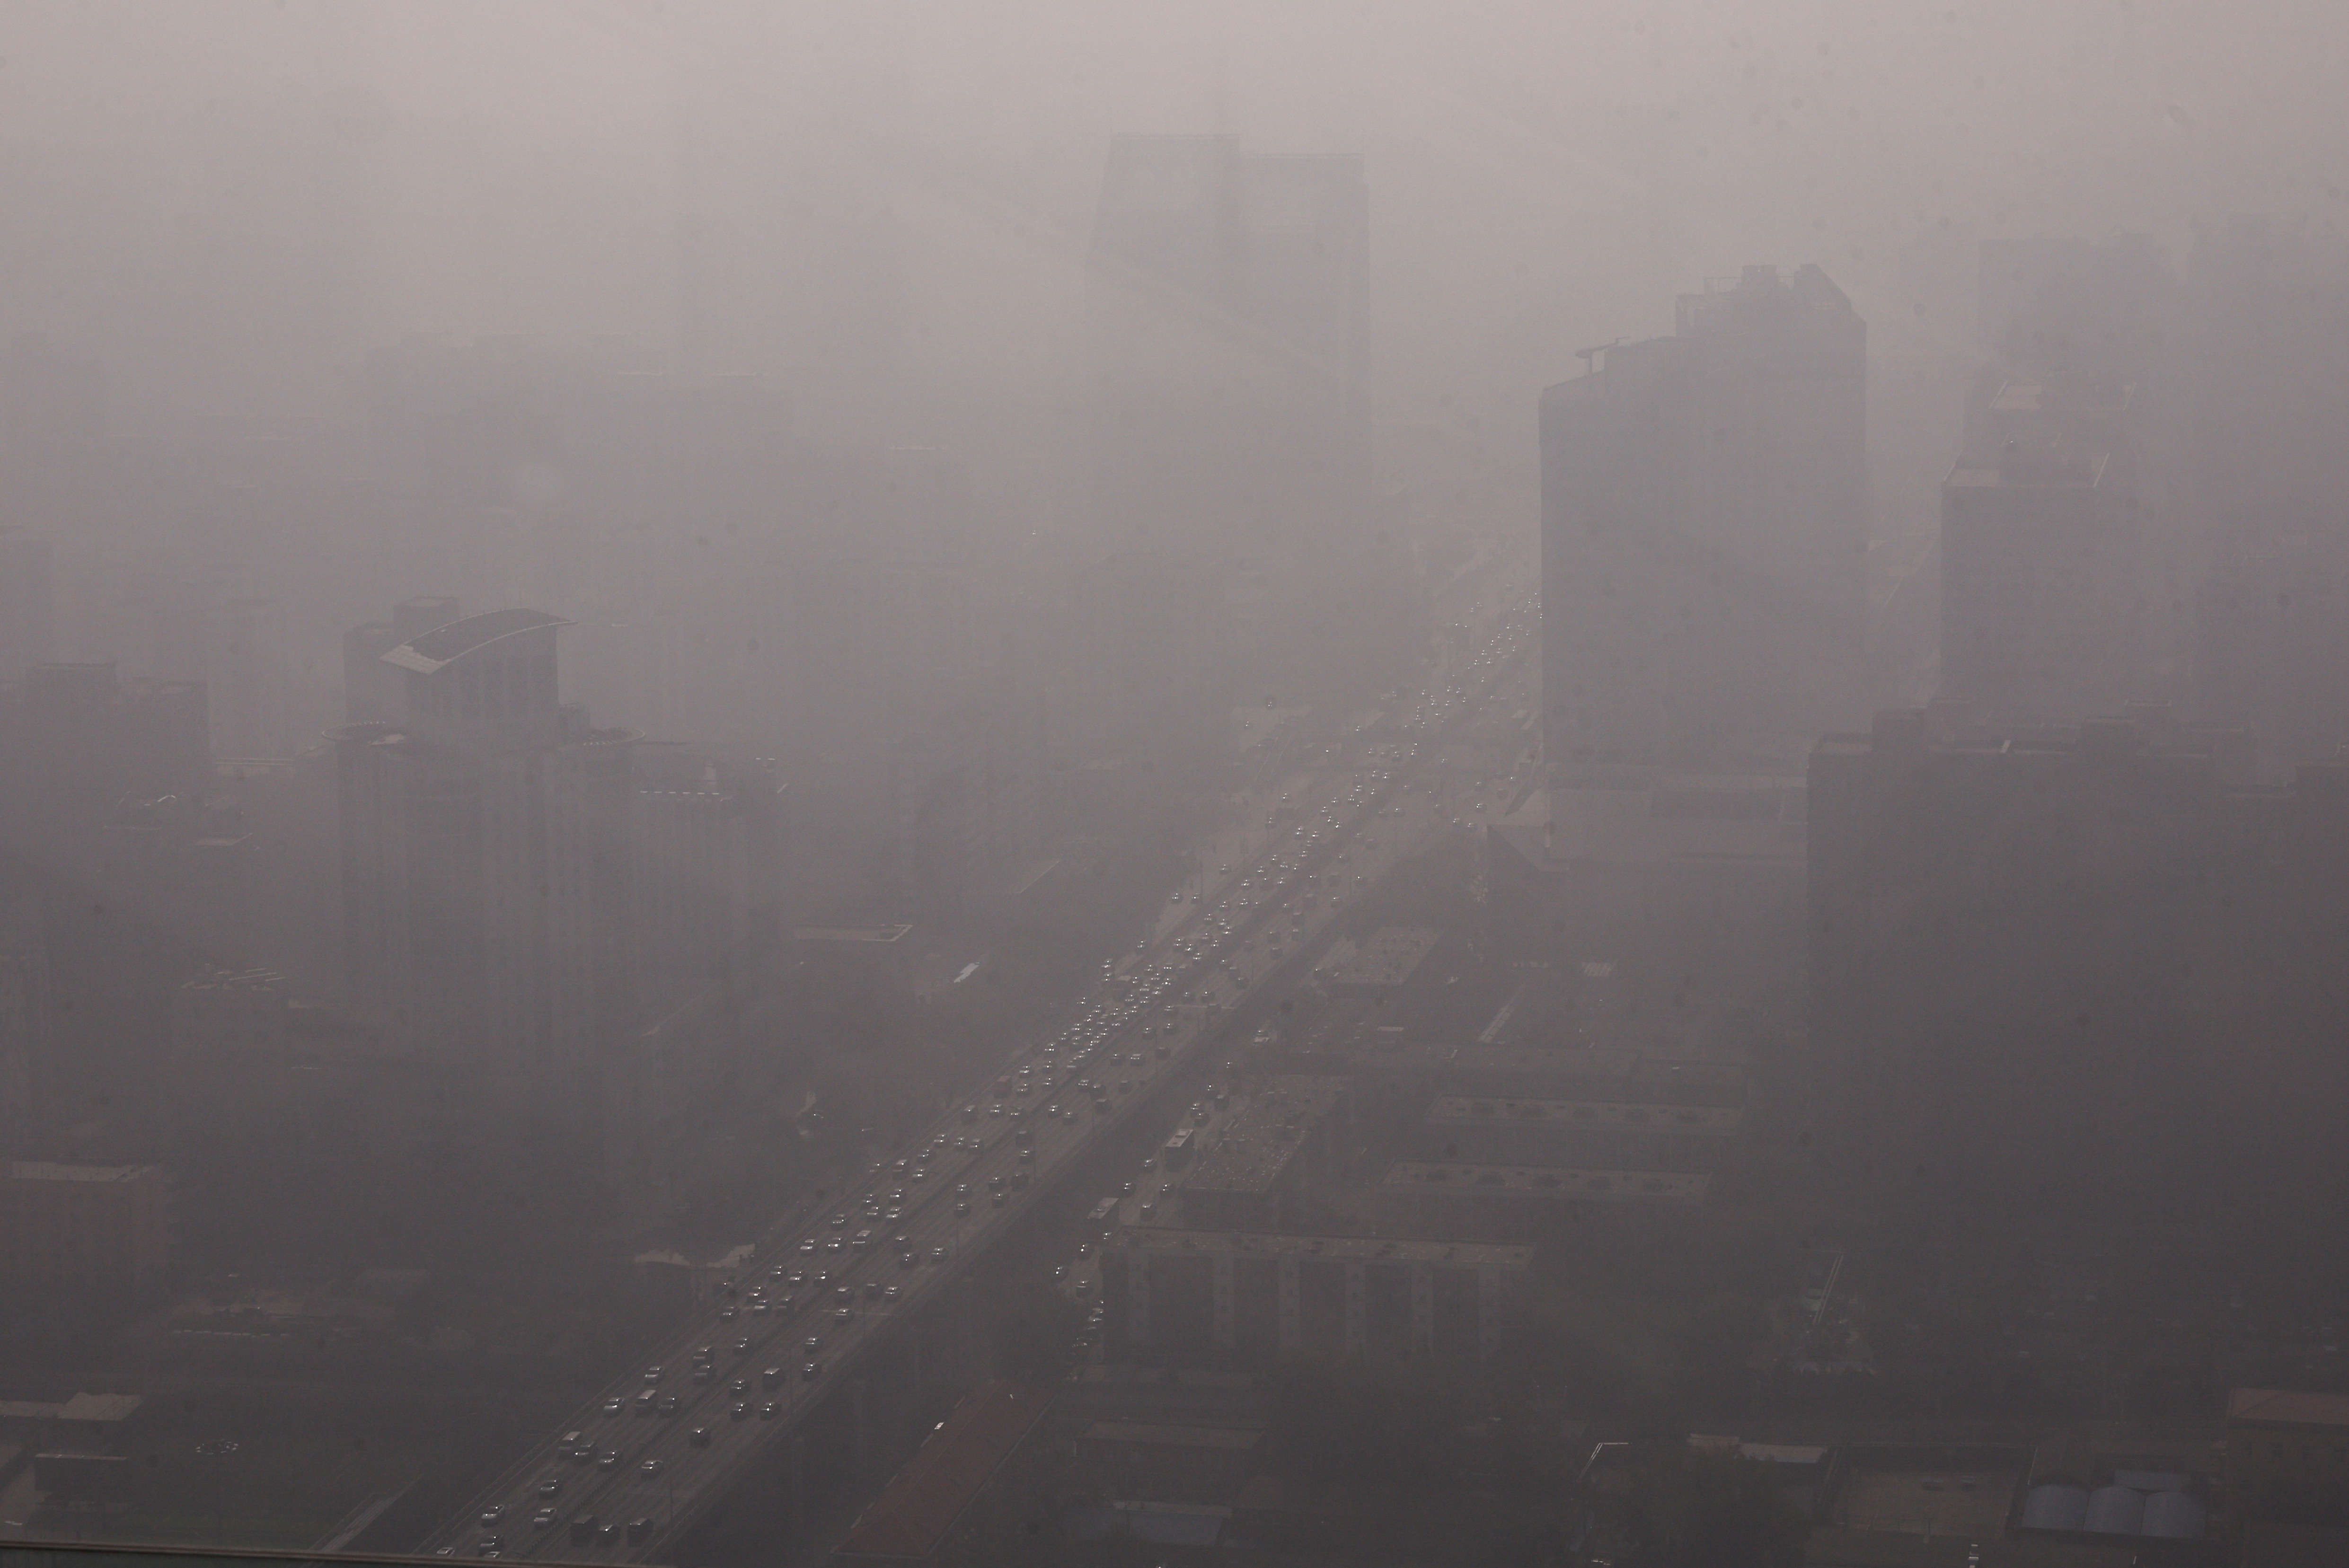 Beijing shrouded in smog